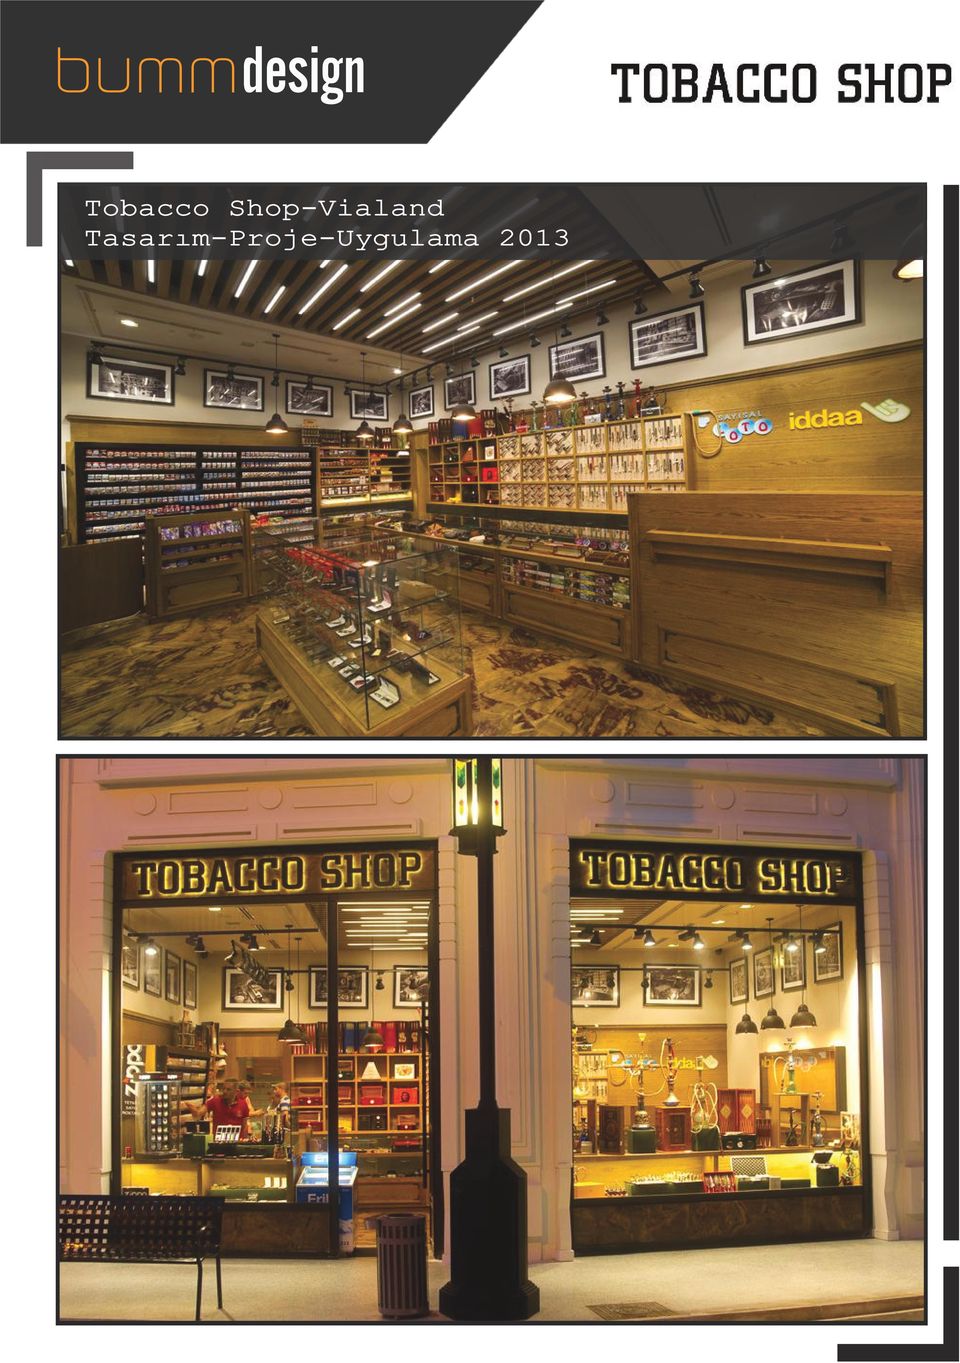 Tobacco Shop-Vialand